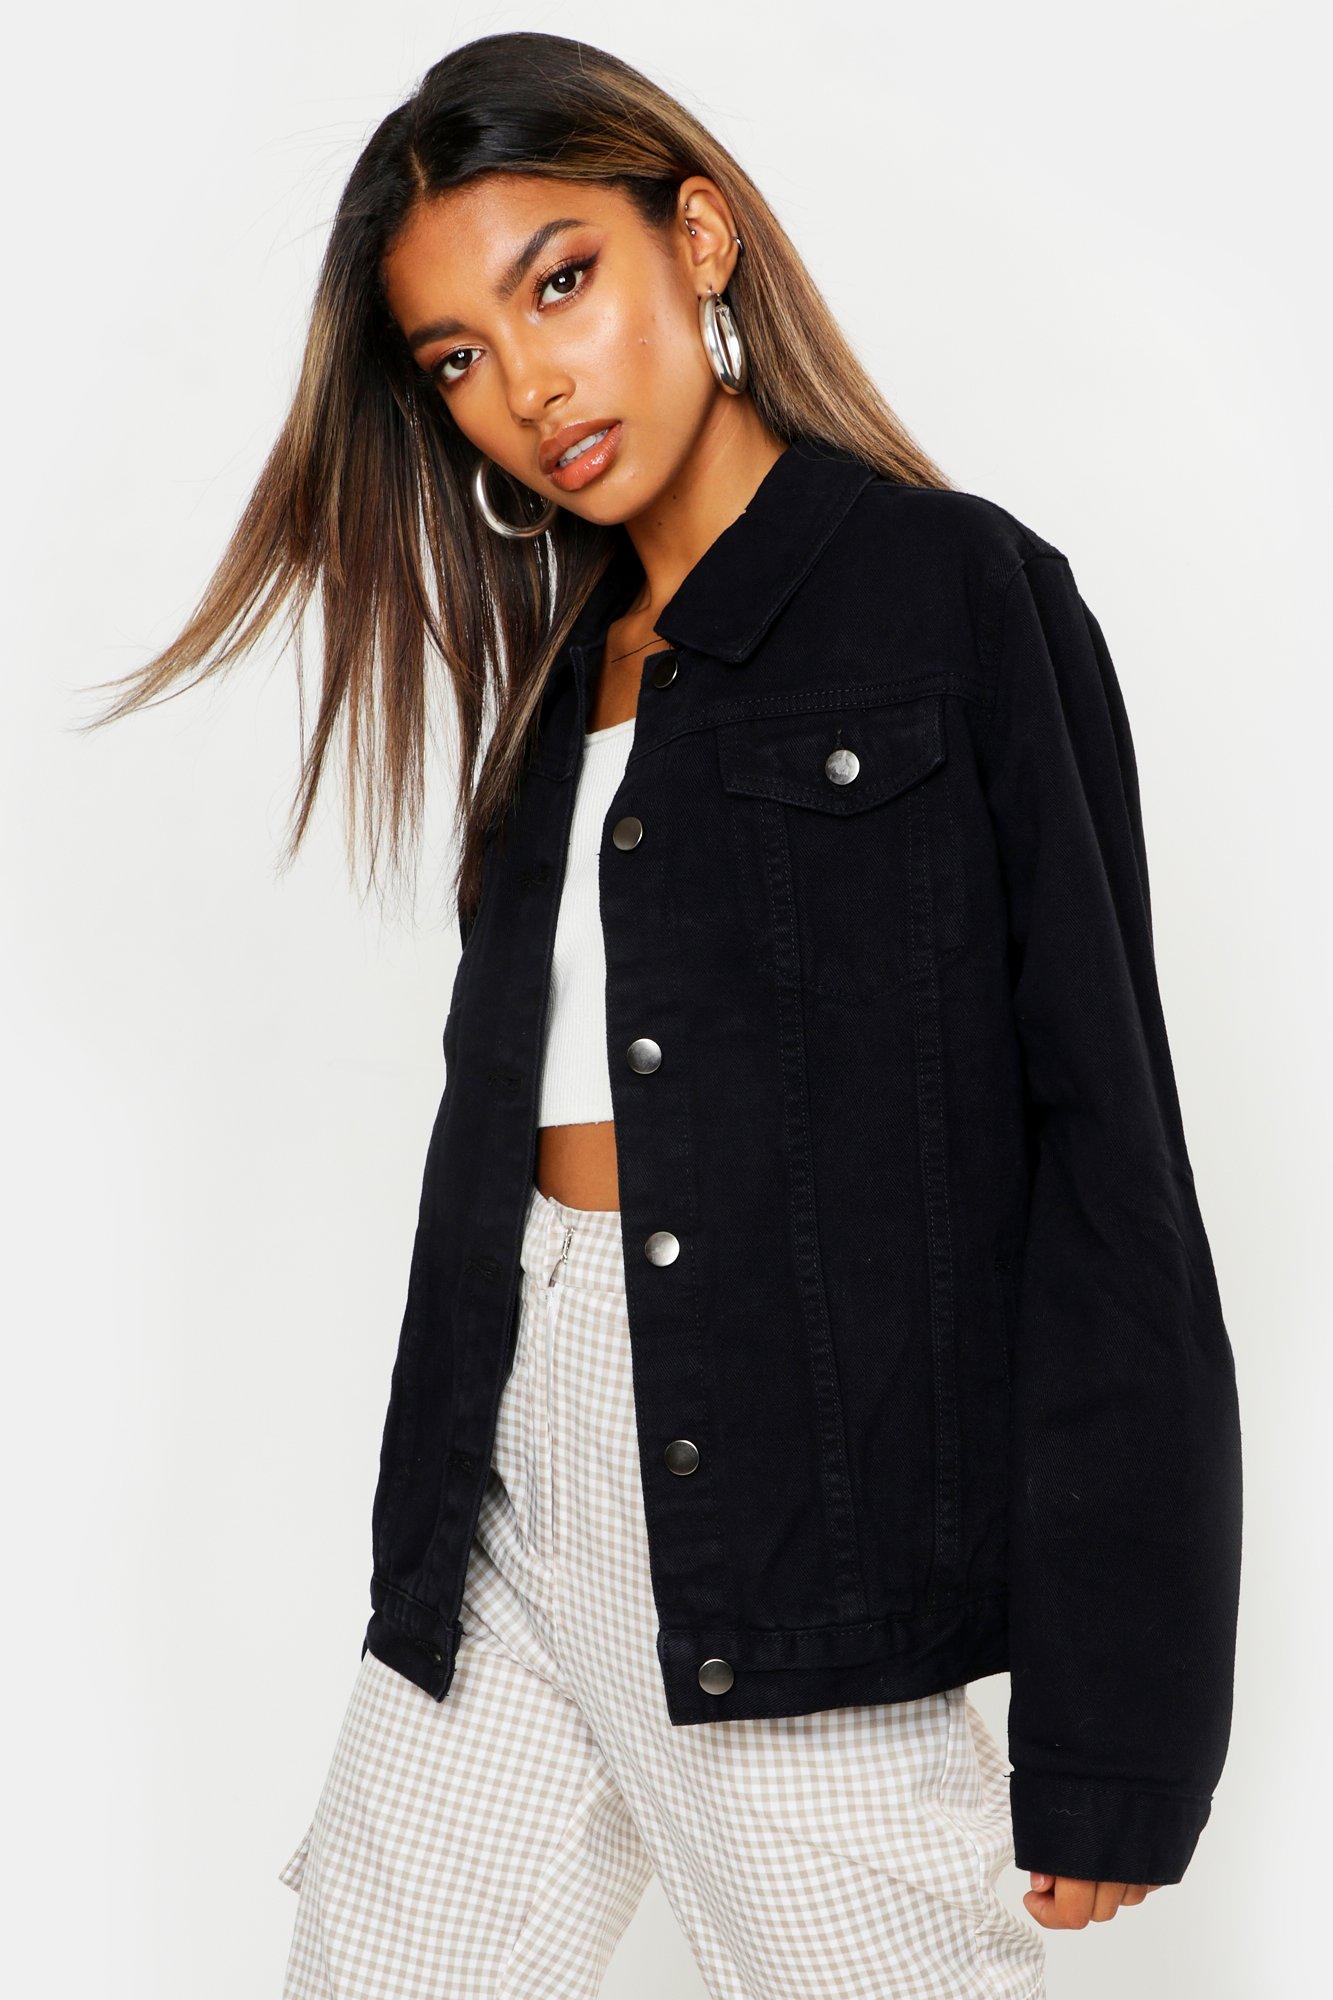 black jean jacket women